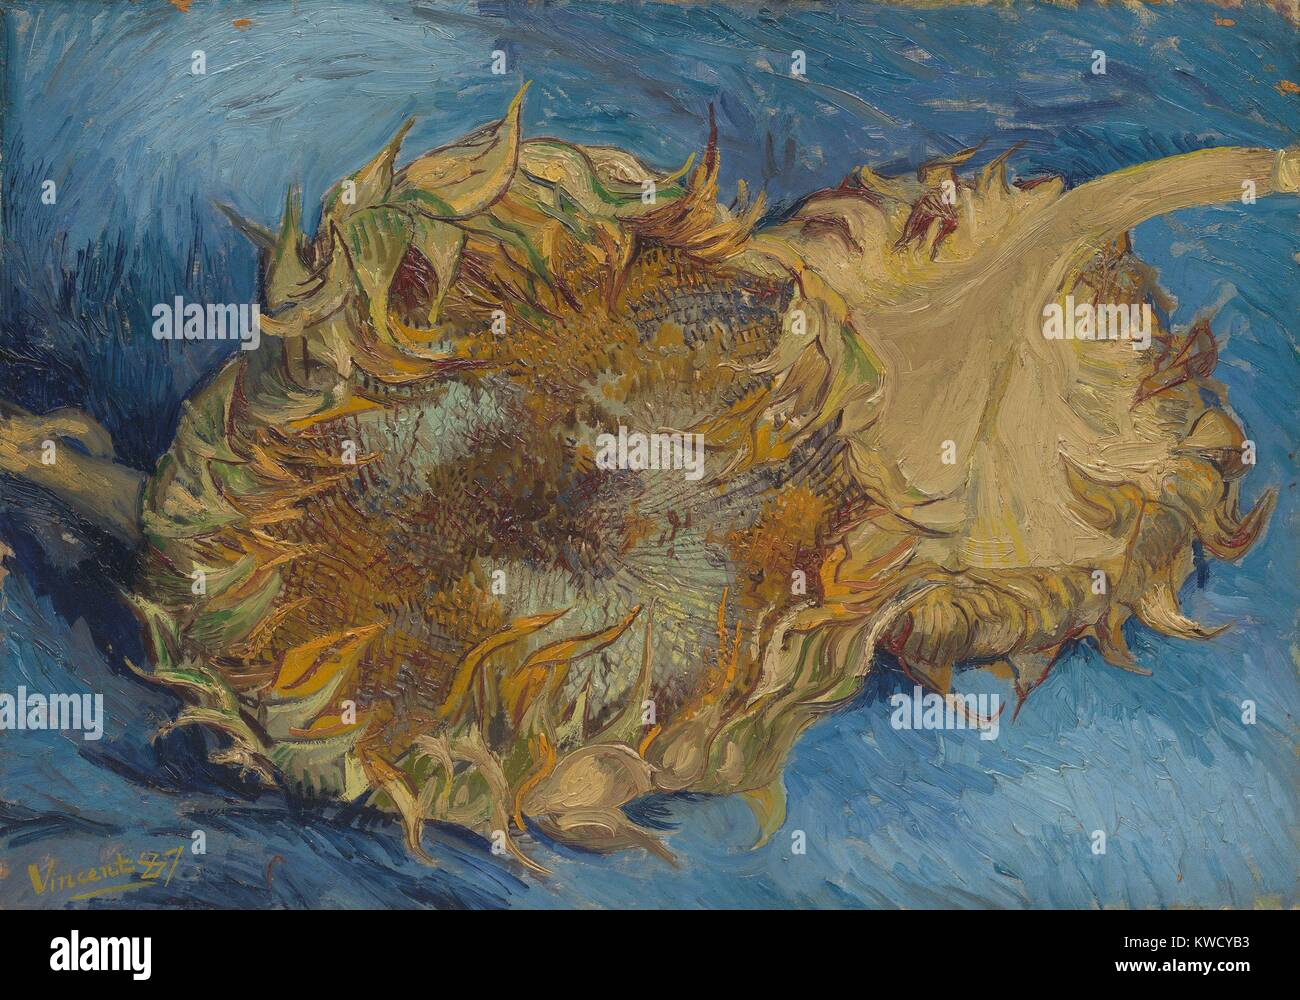 Le tournesol, par Vincent Van Gogh, 1887, Dutch Postimpressionnistes, huile sur toile. Le fort contraste de couleurs complémentaires, orange et bleu, est amplifié par l'application de peinture empâtement rythmique (BSLOC 2017 5 38) Banque D'Images